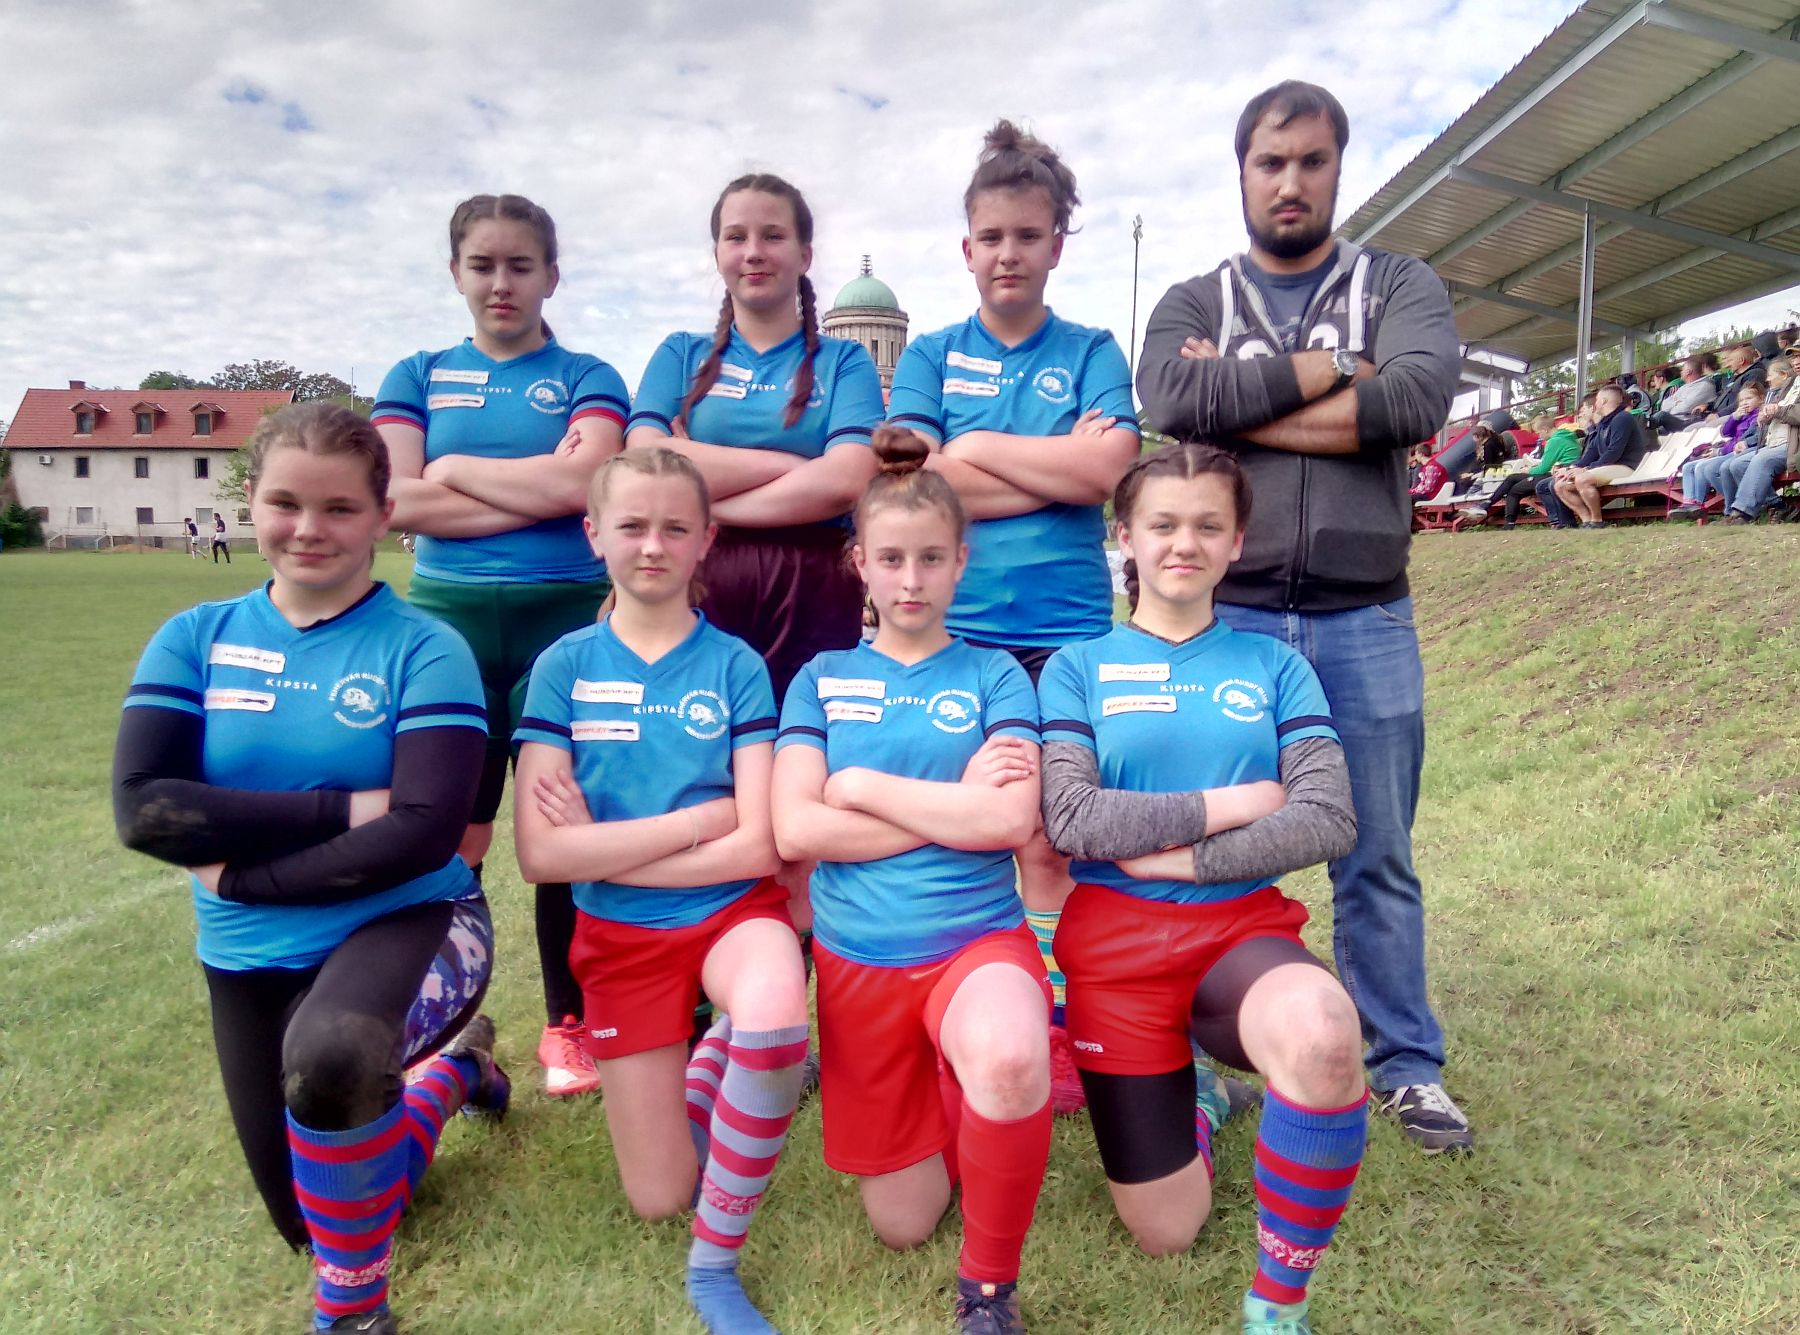 Bajnok lett a Fehérvár Rugby Club U14 lány csapata